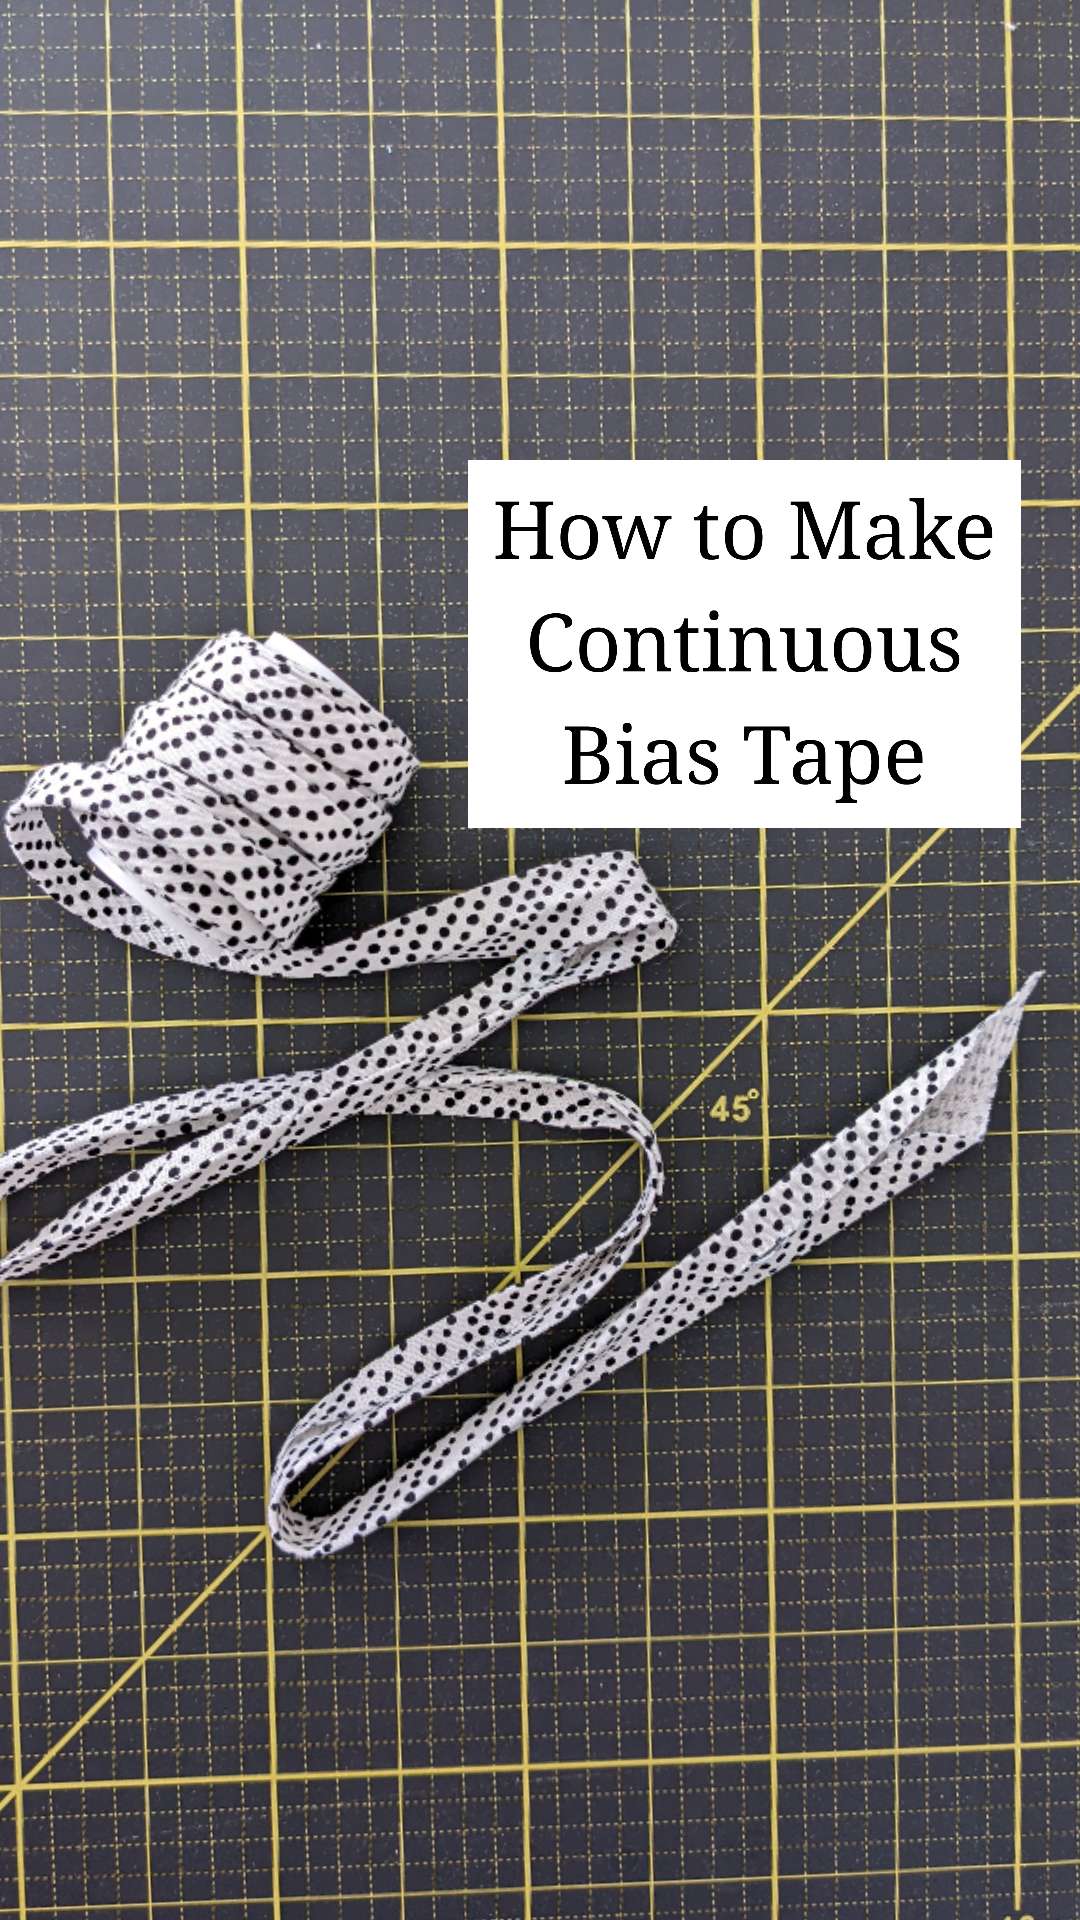 How to Make Bias Tape